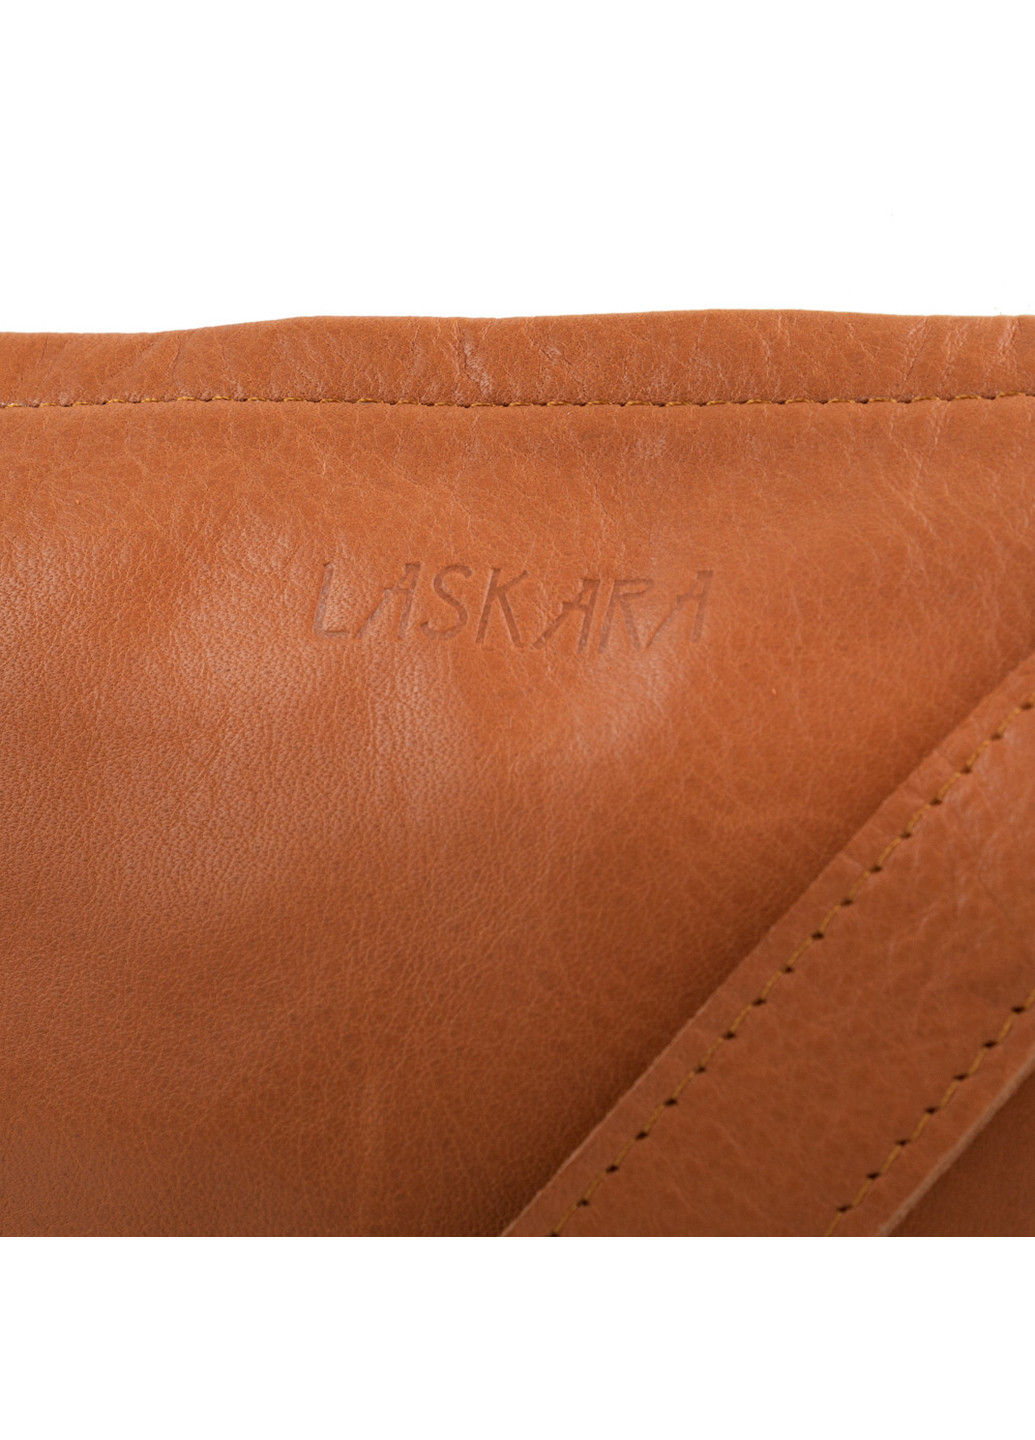 Женская кожаная сумка-клатч 24х14х3 см Laskara (253032300)